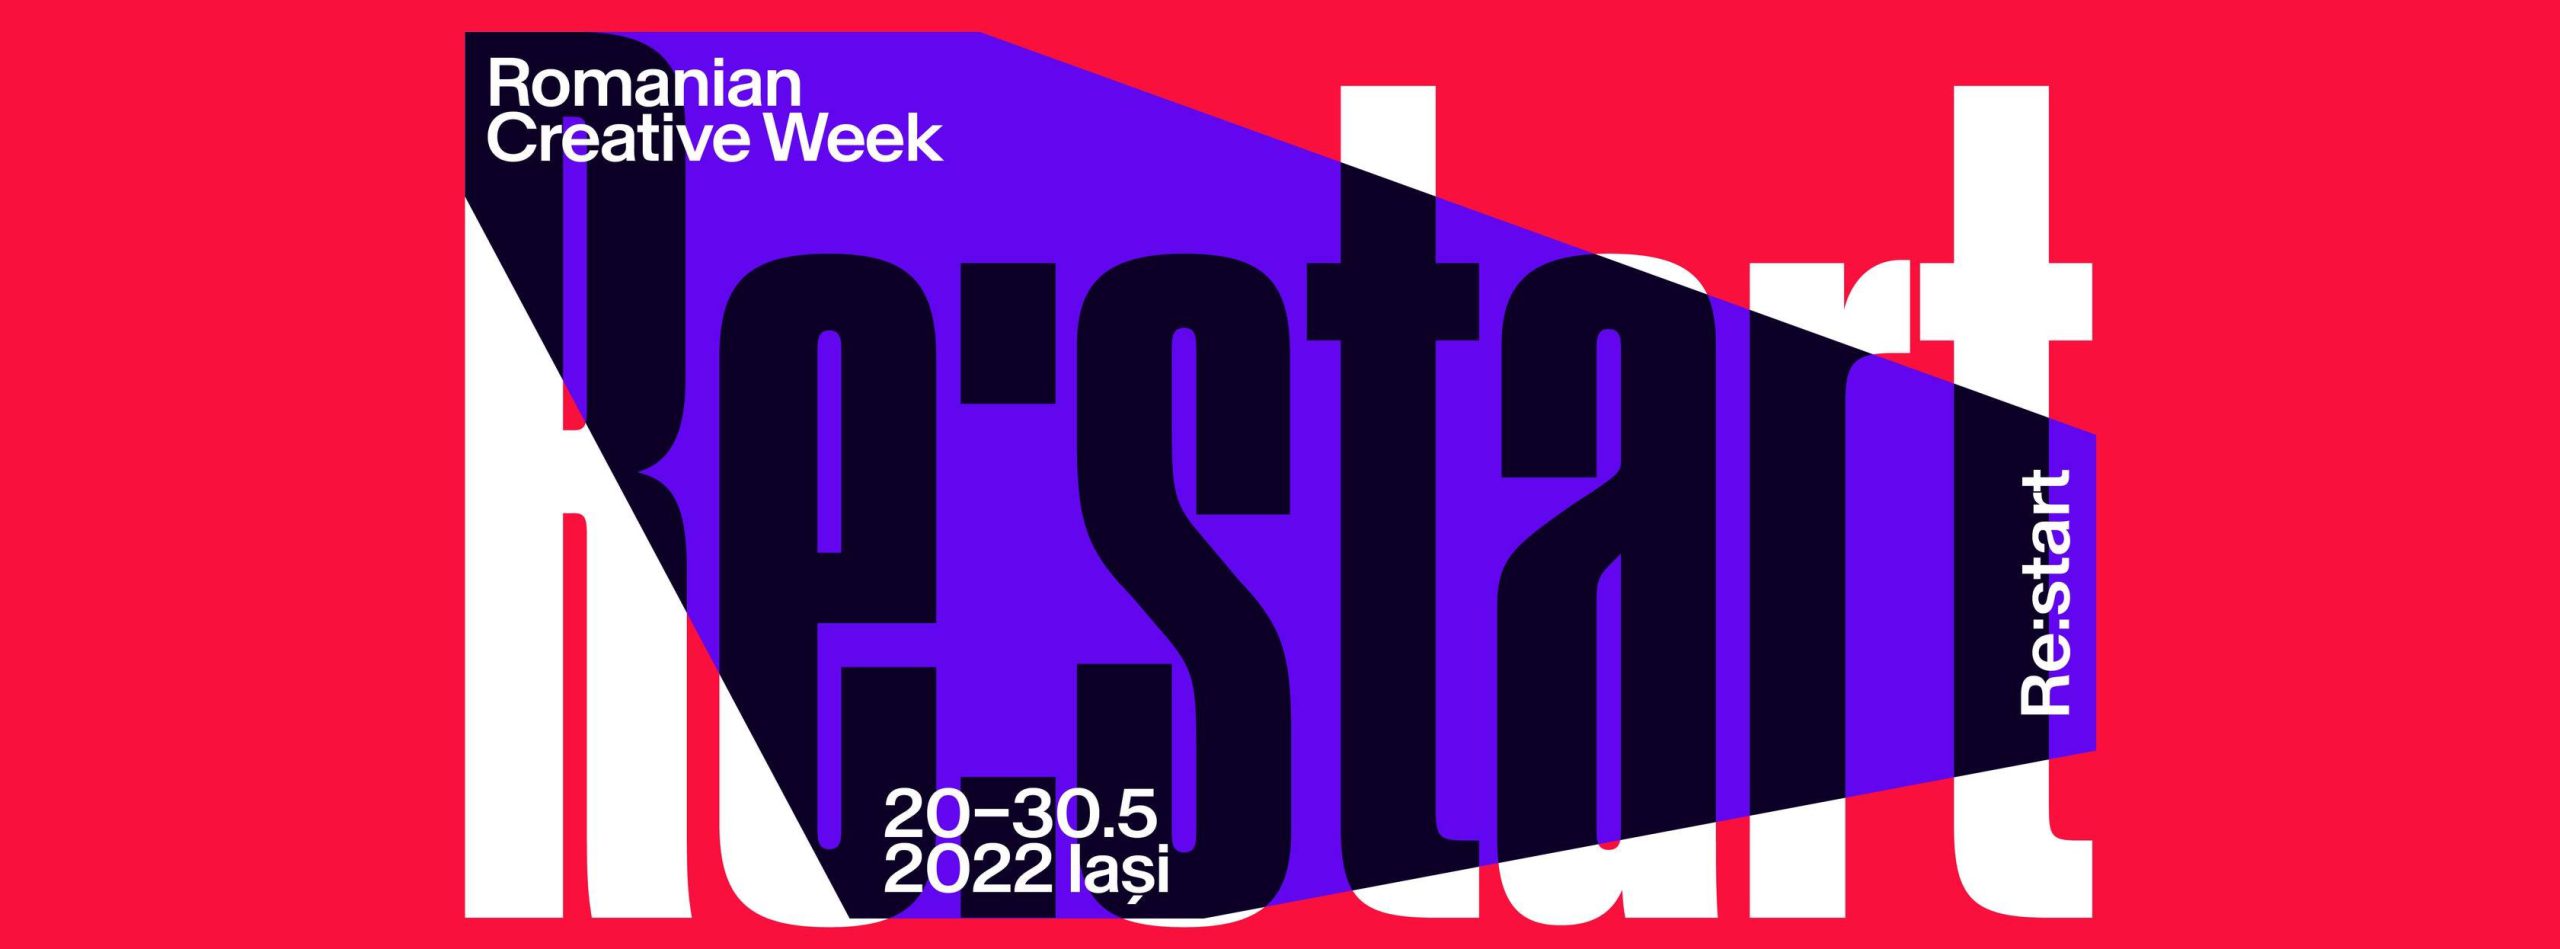  Ce se mai întâmplă azi la Romanian Creative Week (RCW) – Musicalling